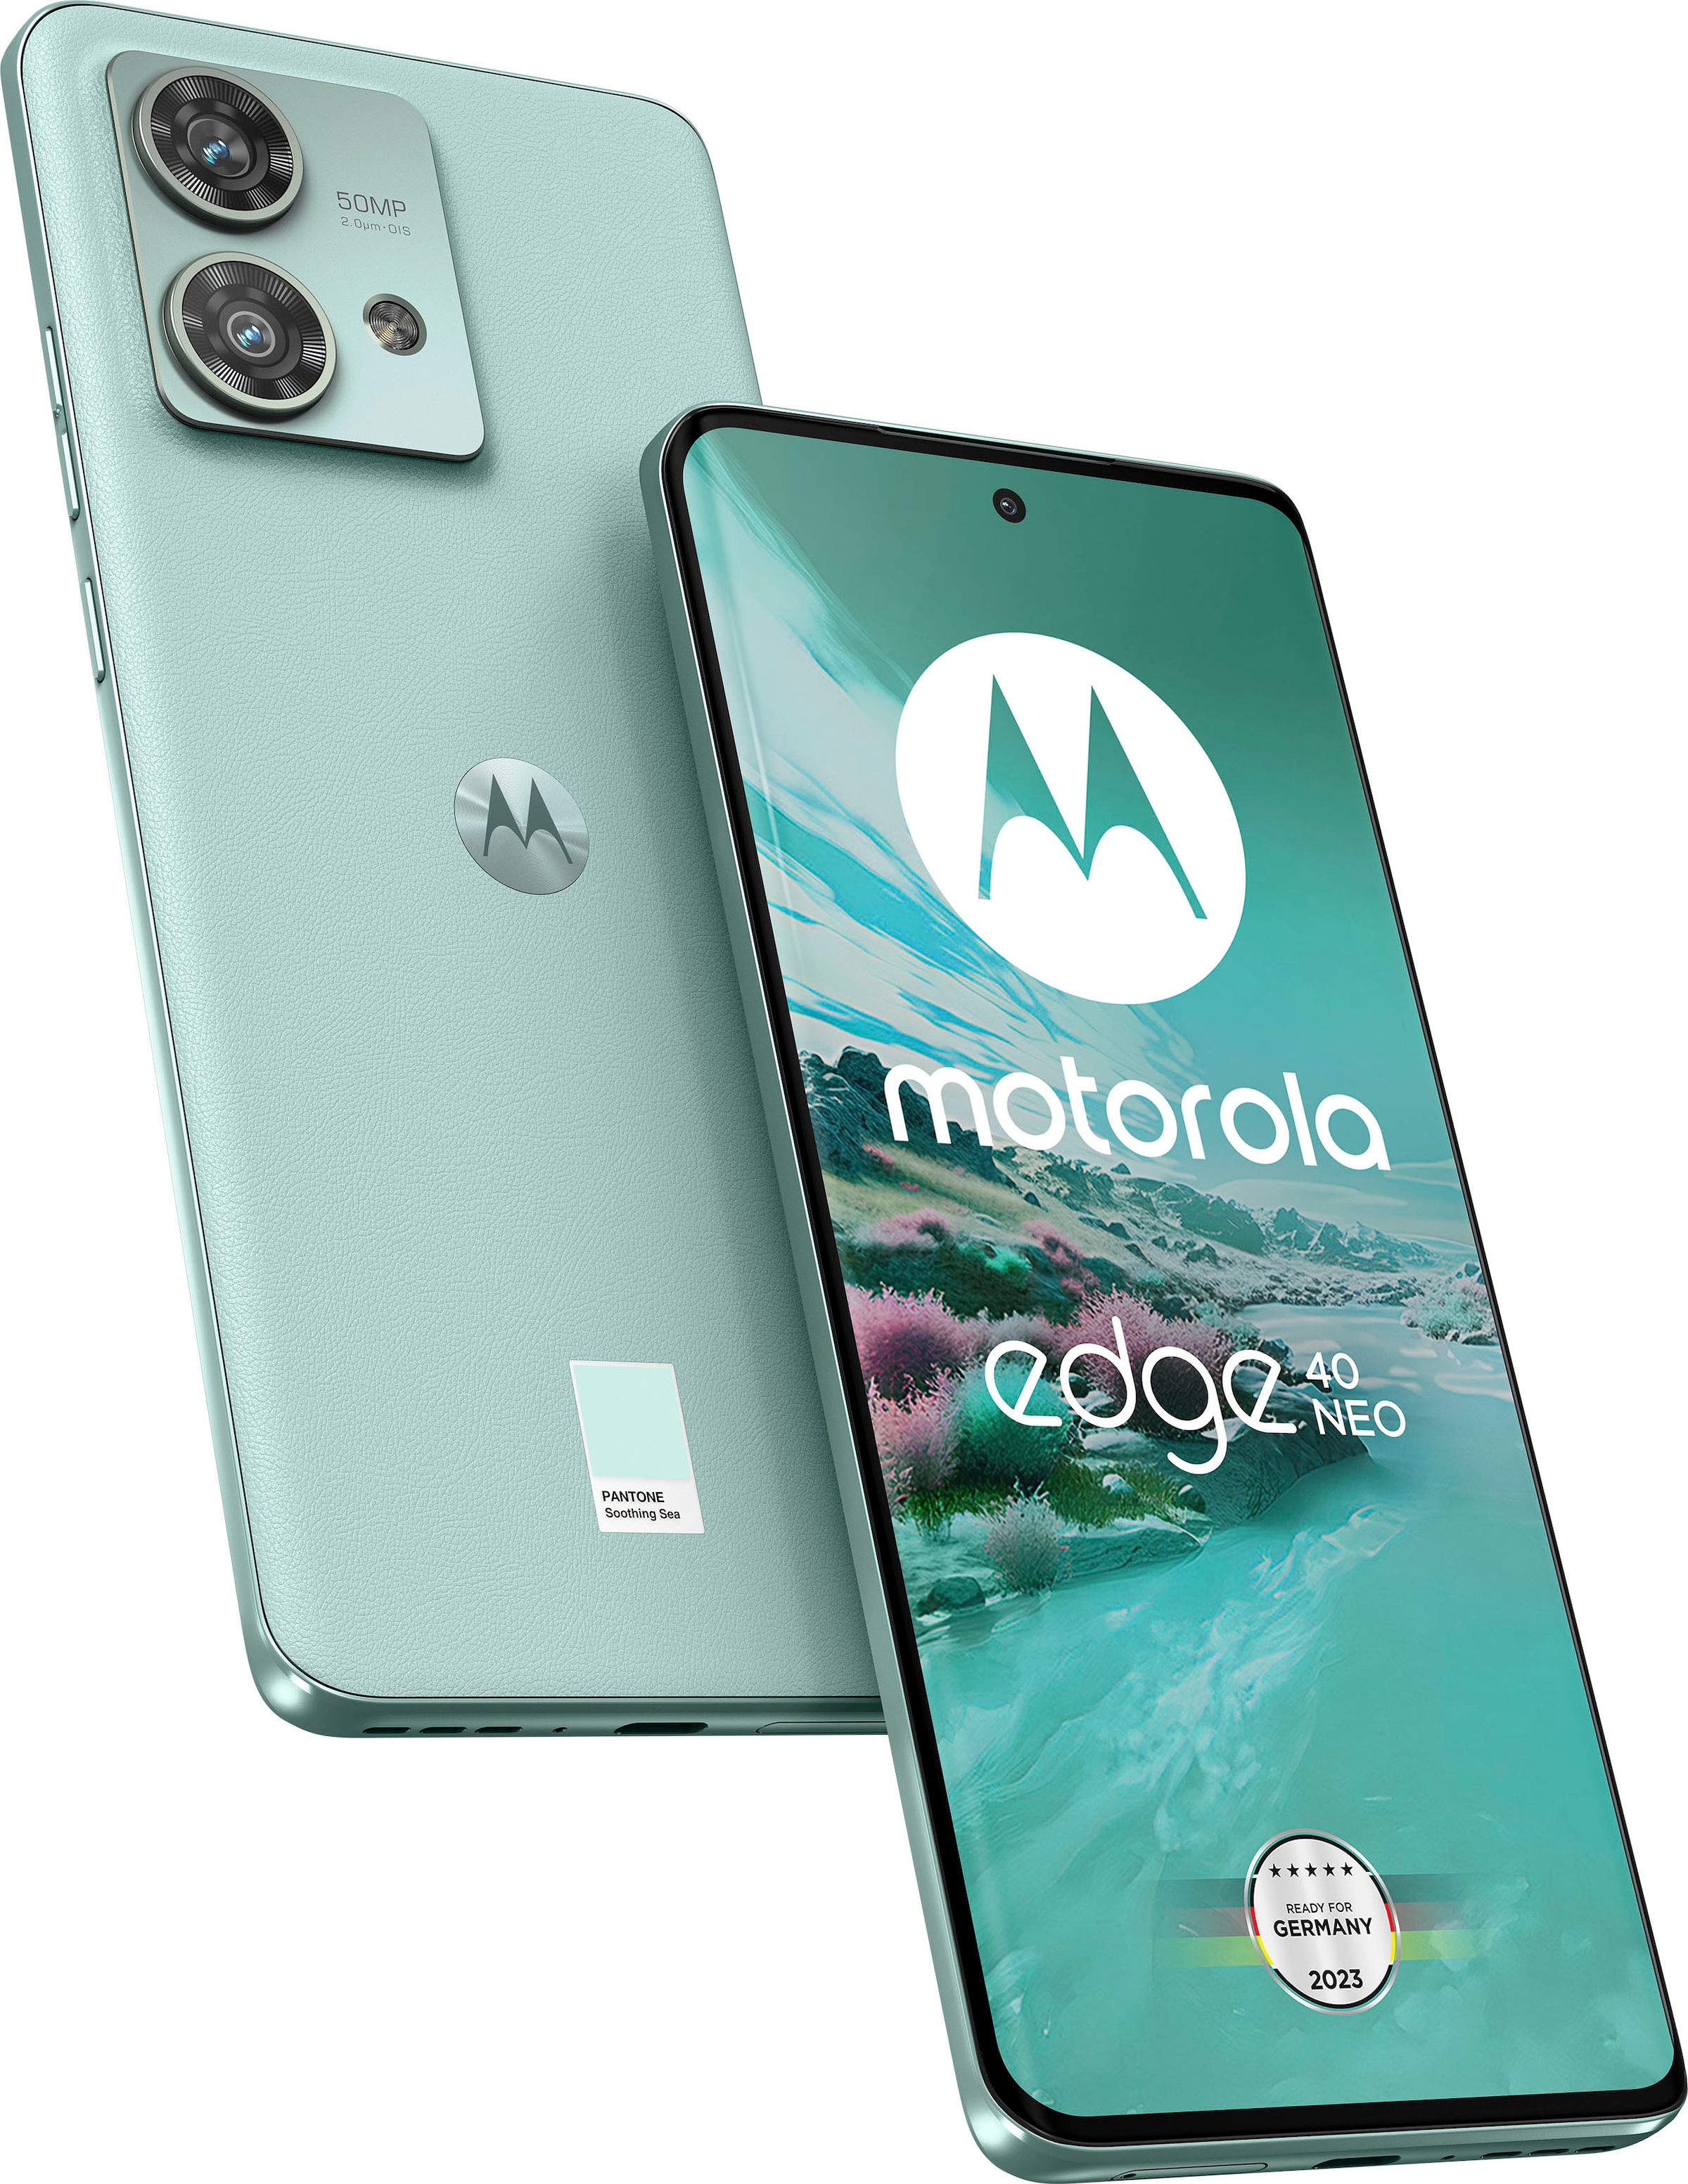 Motorola Smartphone »edge 40 neo, 256 GB«, Black Beauty, 16,64 cm/6,55 Zoll,  256 GB Speicherplatz, 50 MP Kamera auf Rechnung kaufen